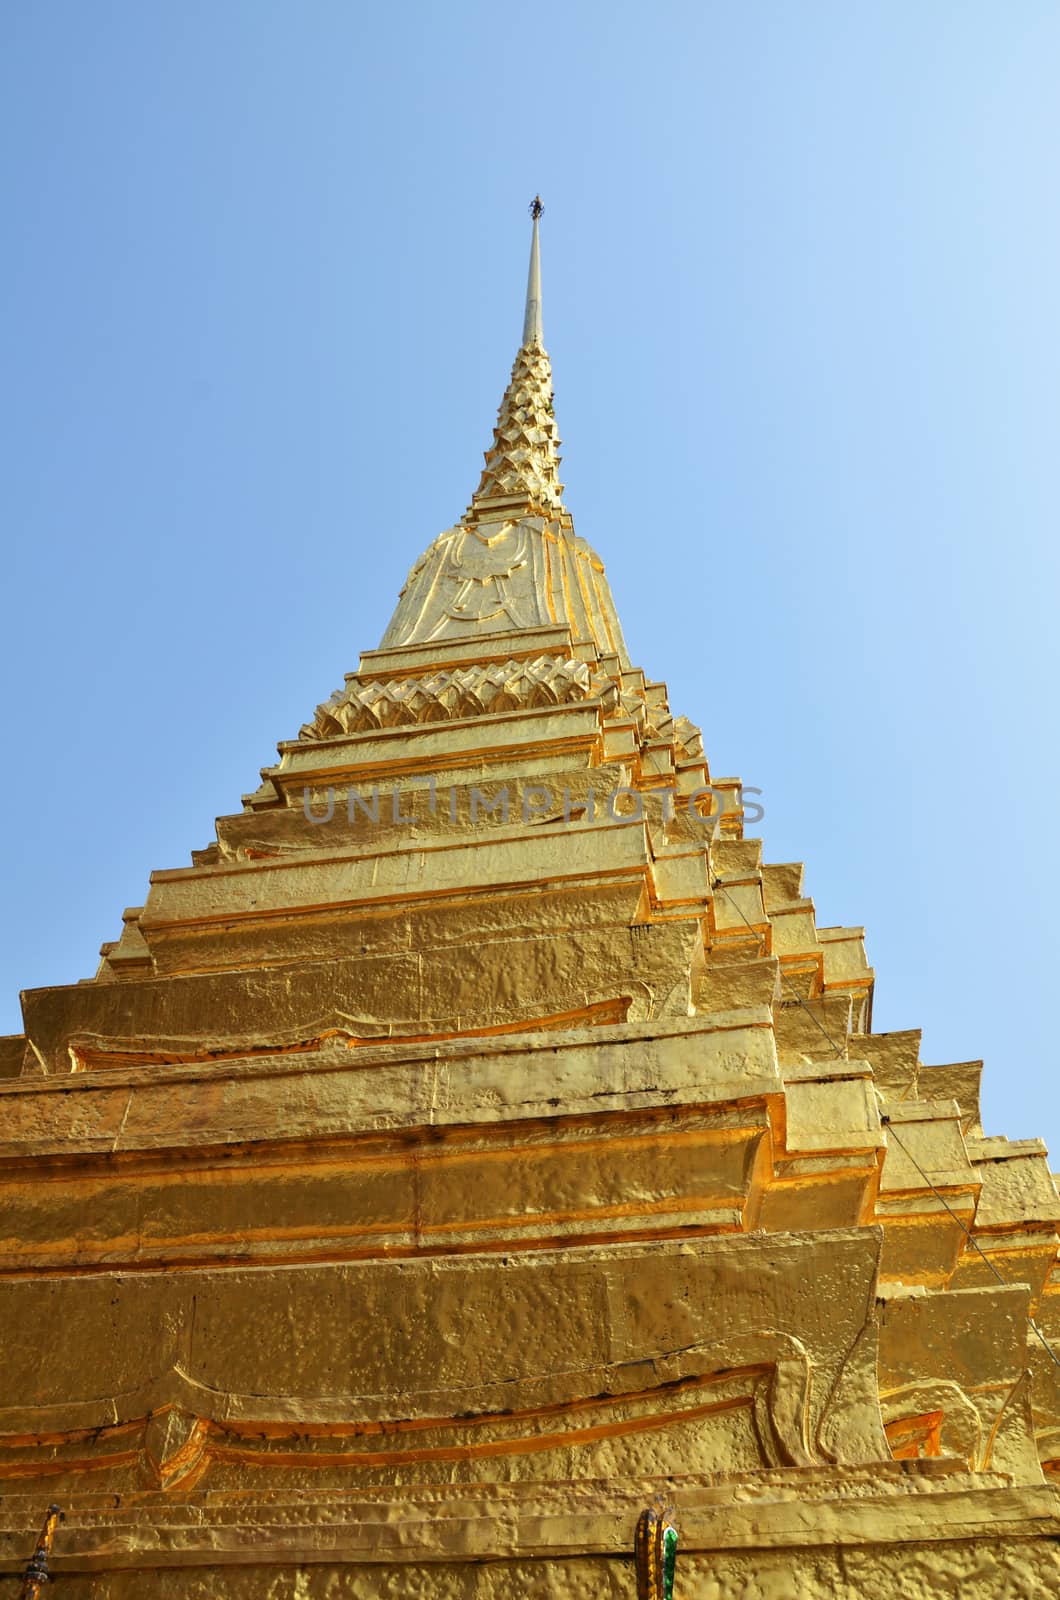 Golden pagoda in Grand Palace, Bangkok by tang90246